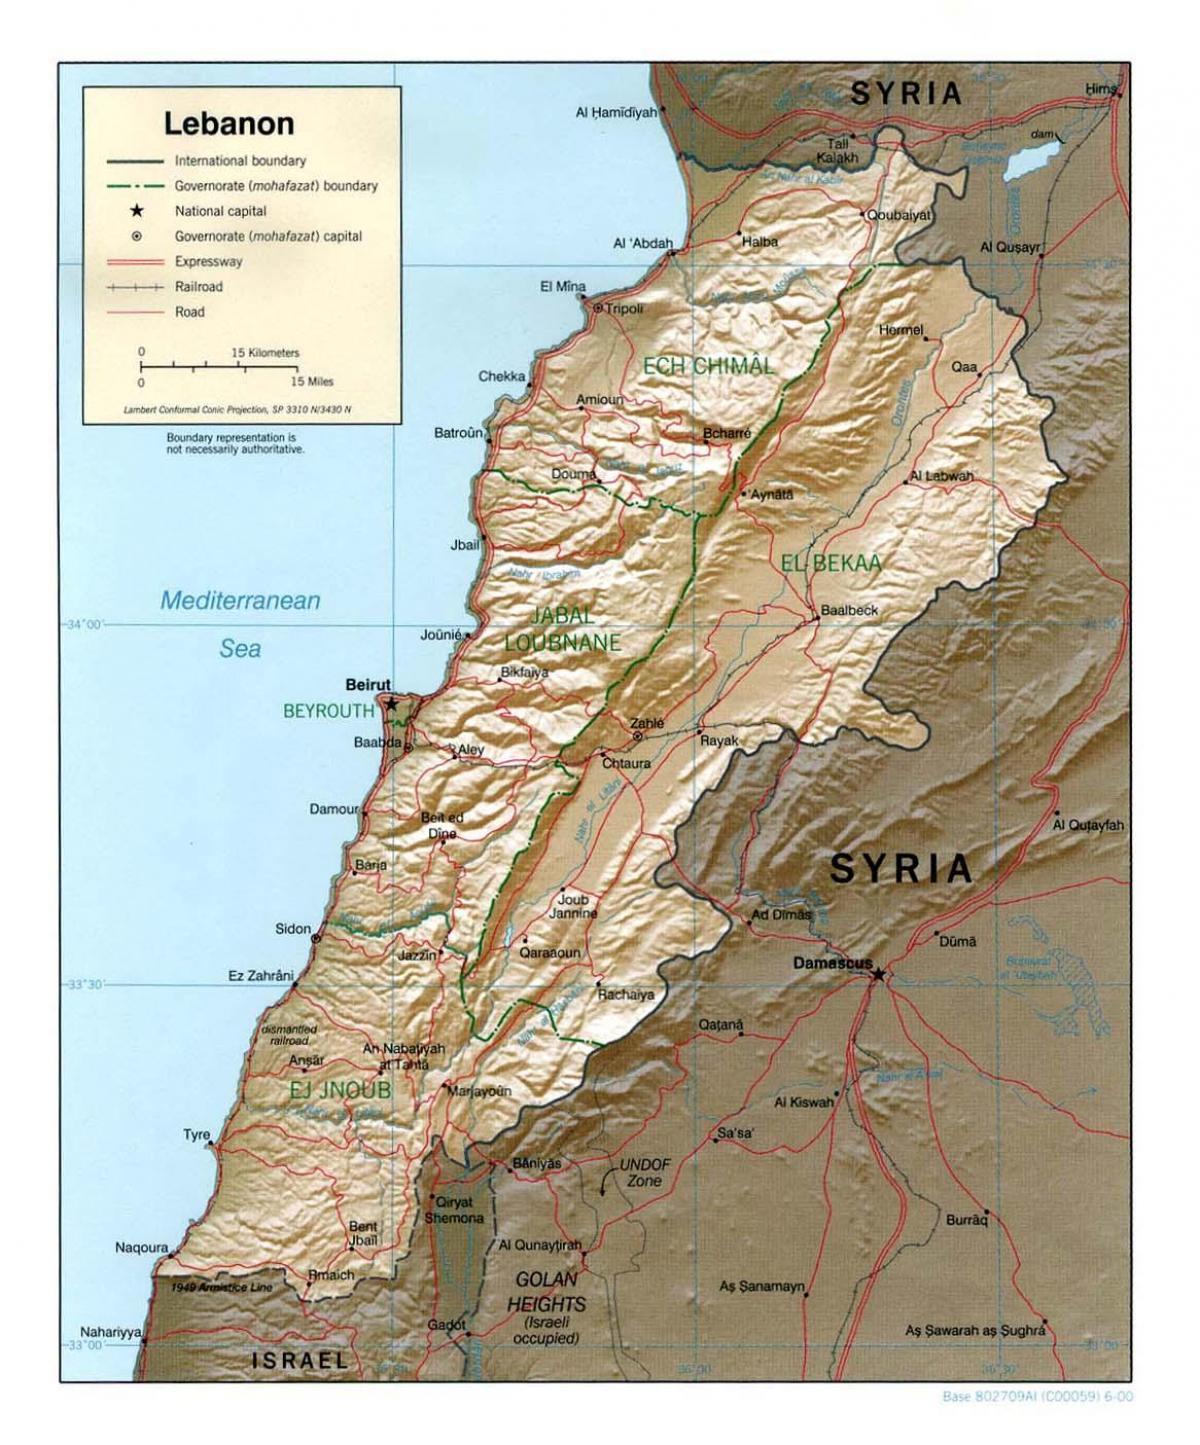 خريطة طبوغرافية لبنان